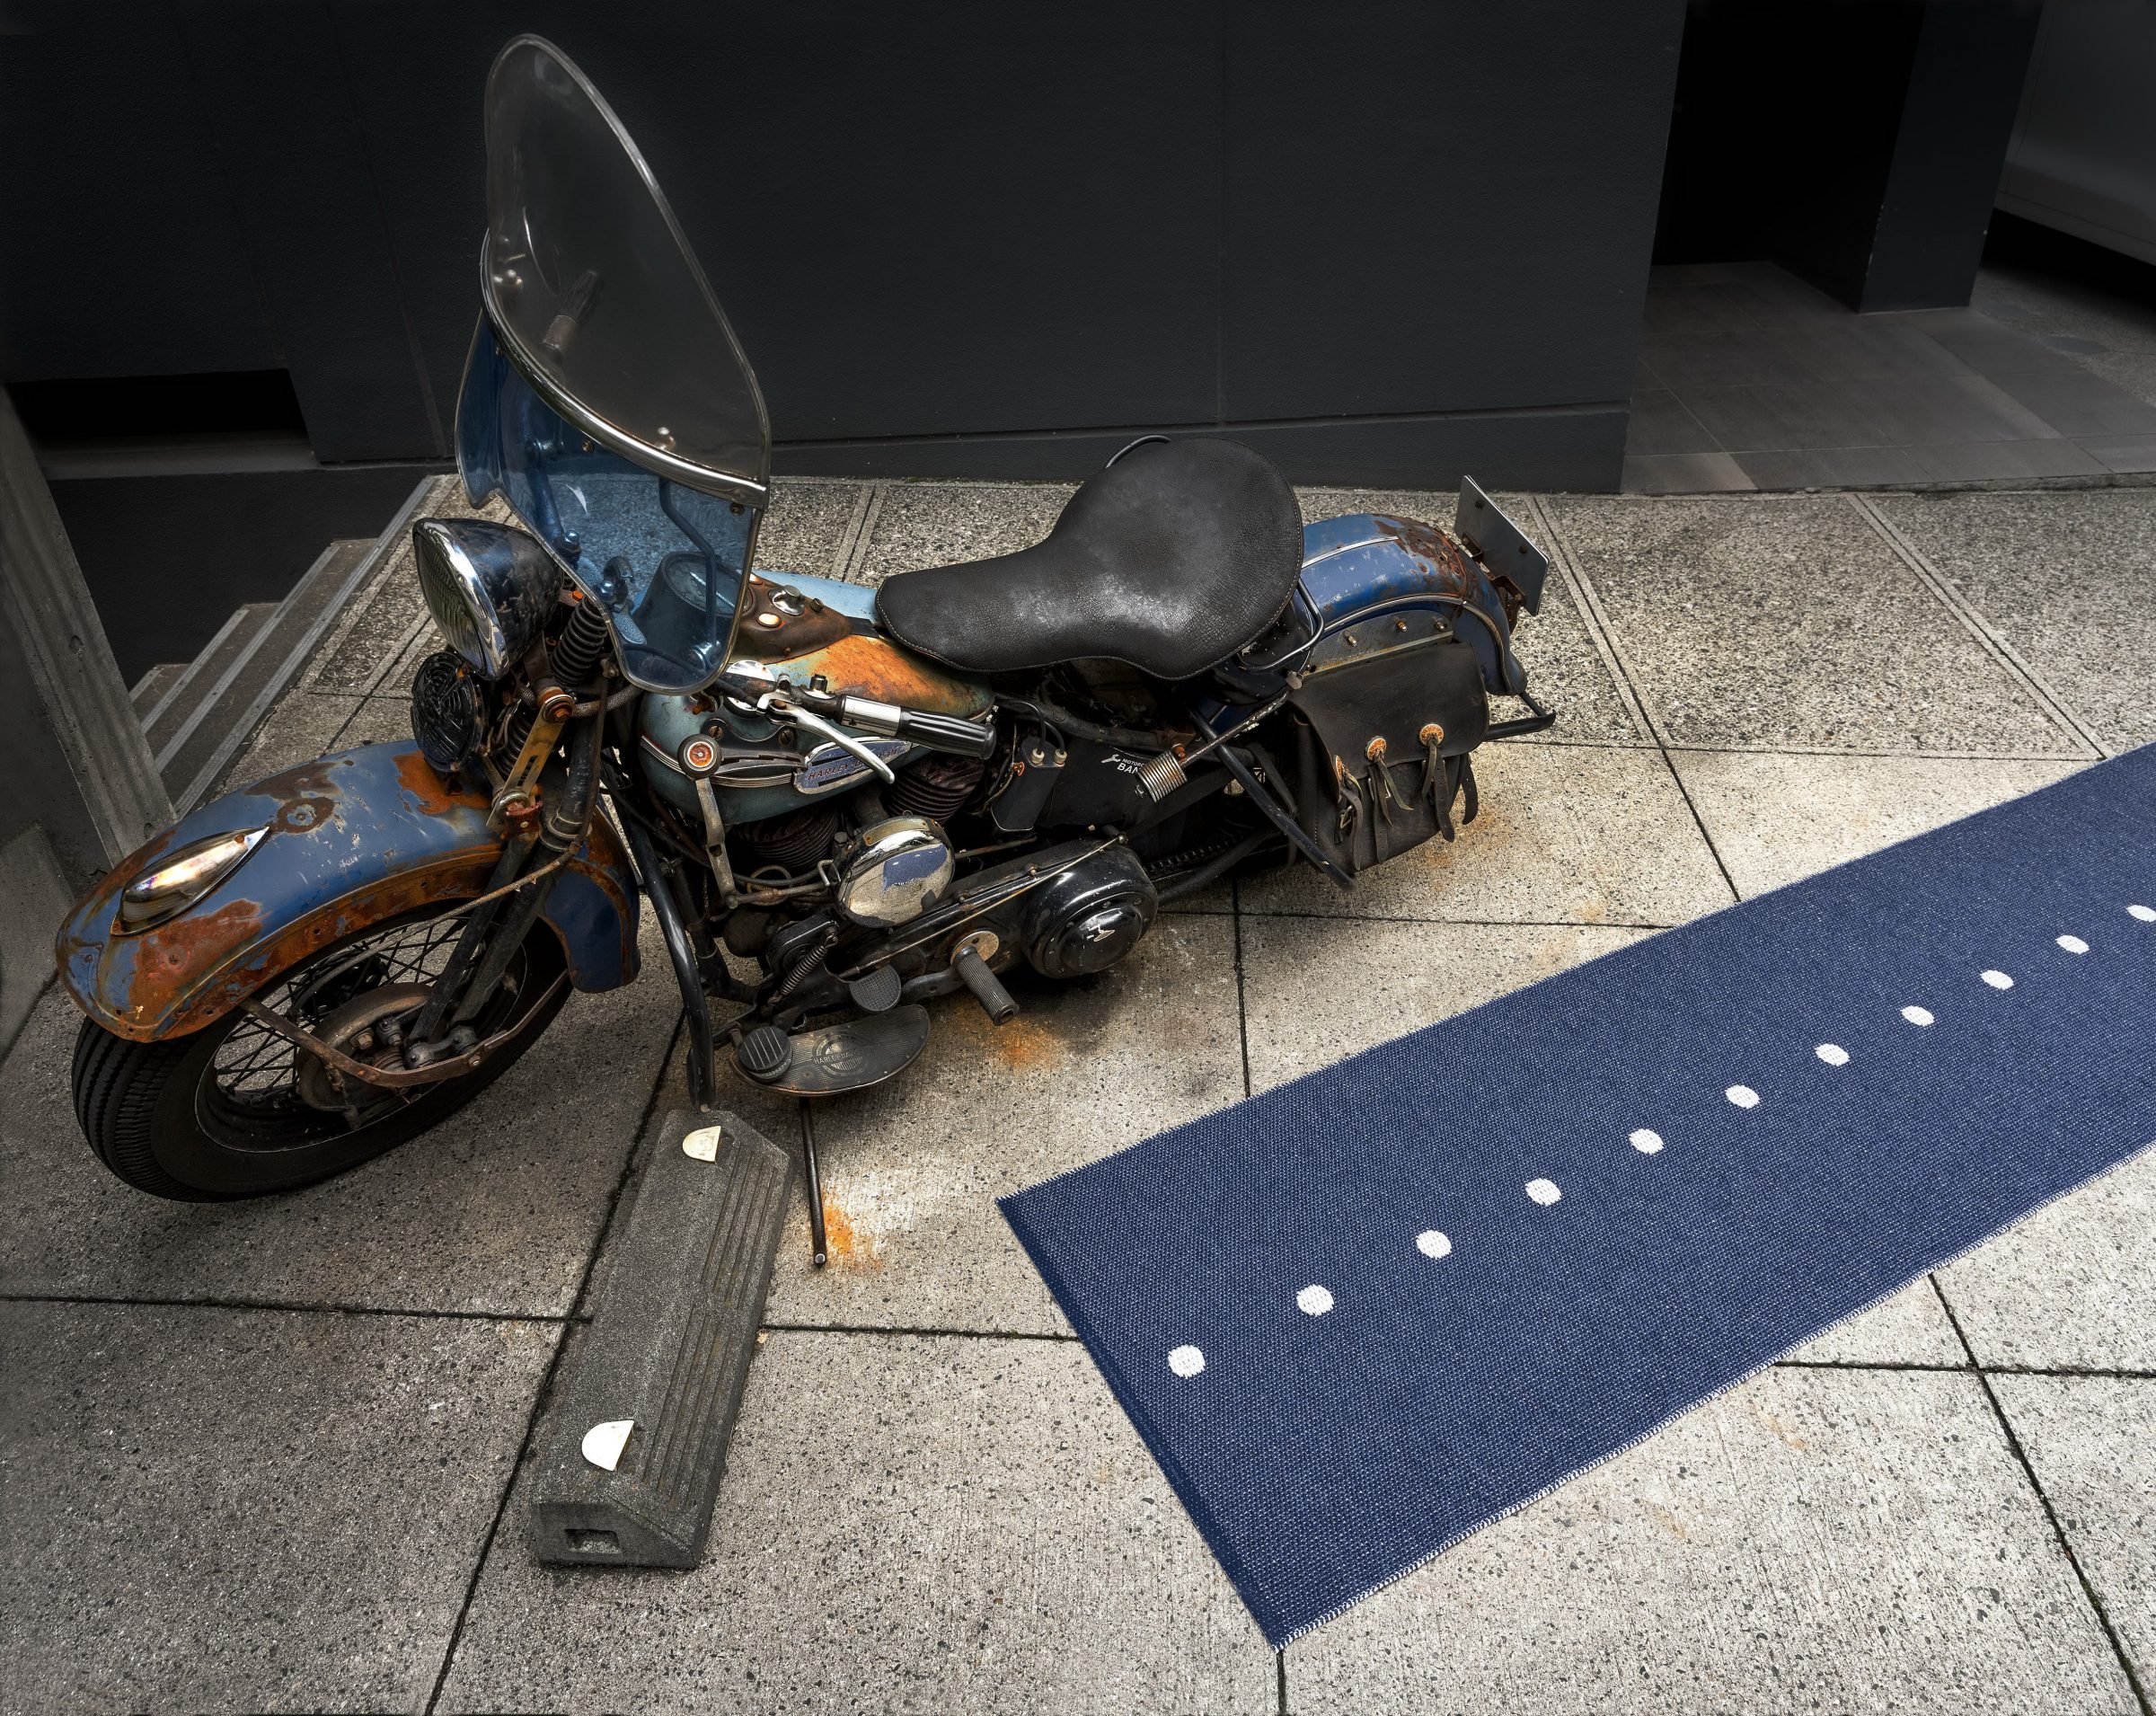 Teppich vor Motorrad